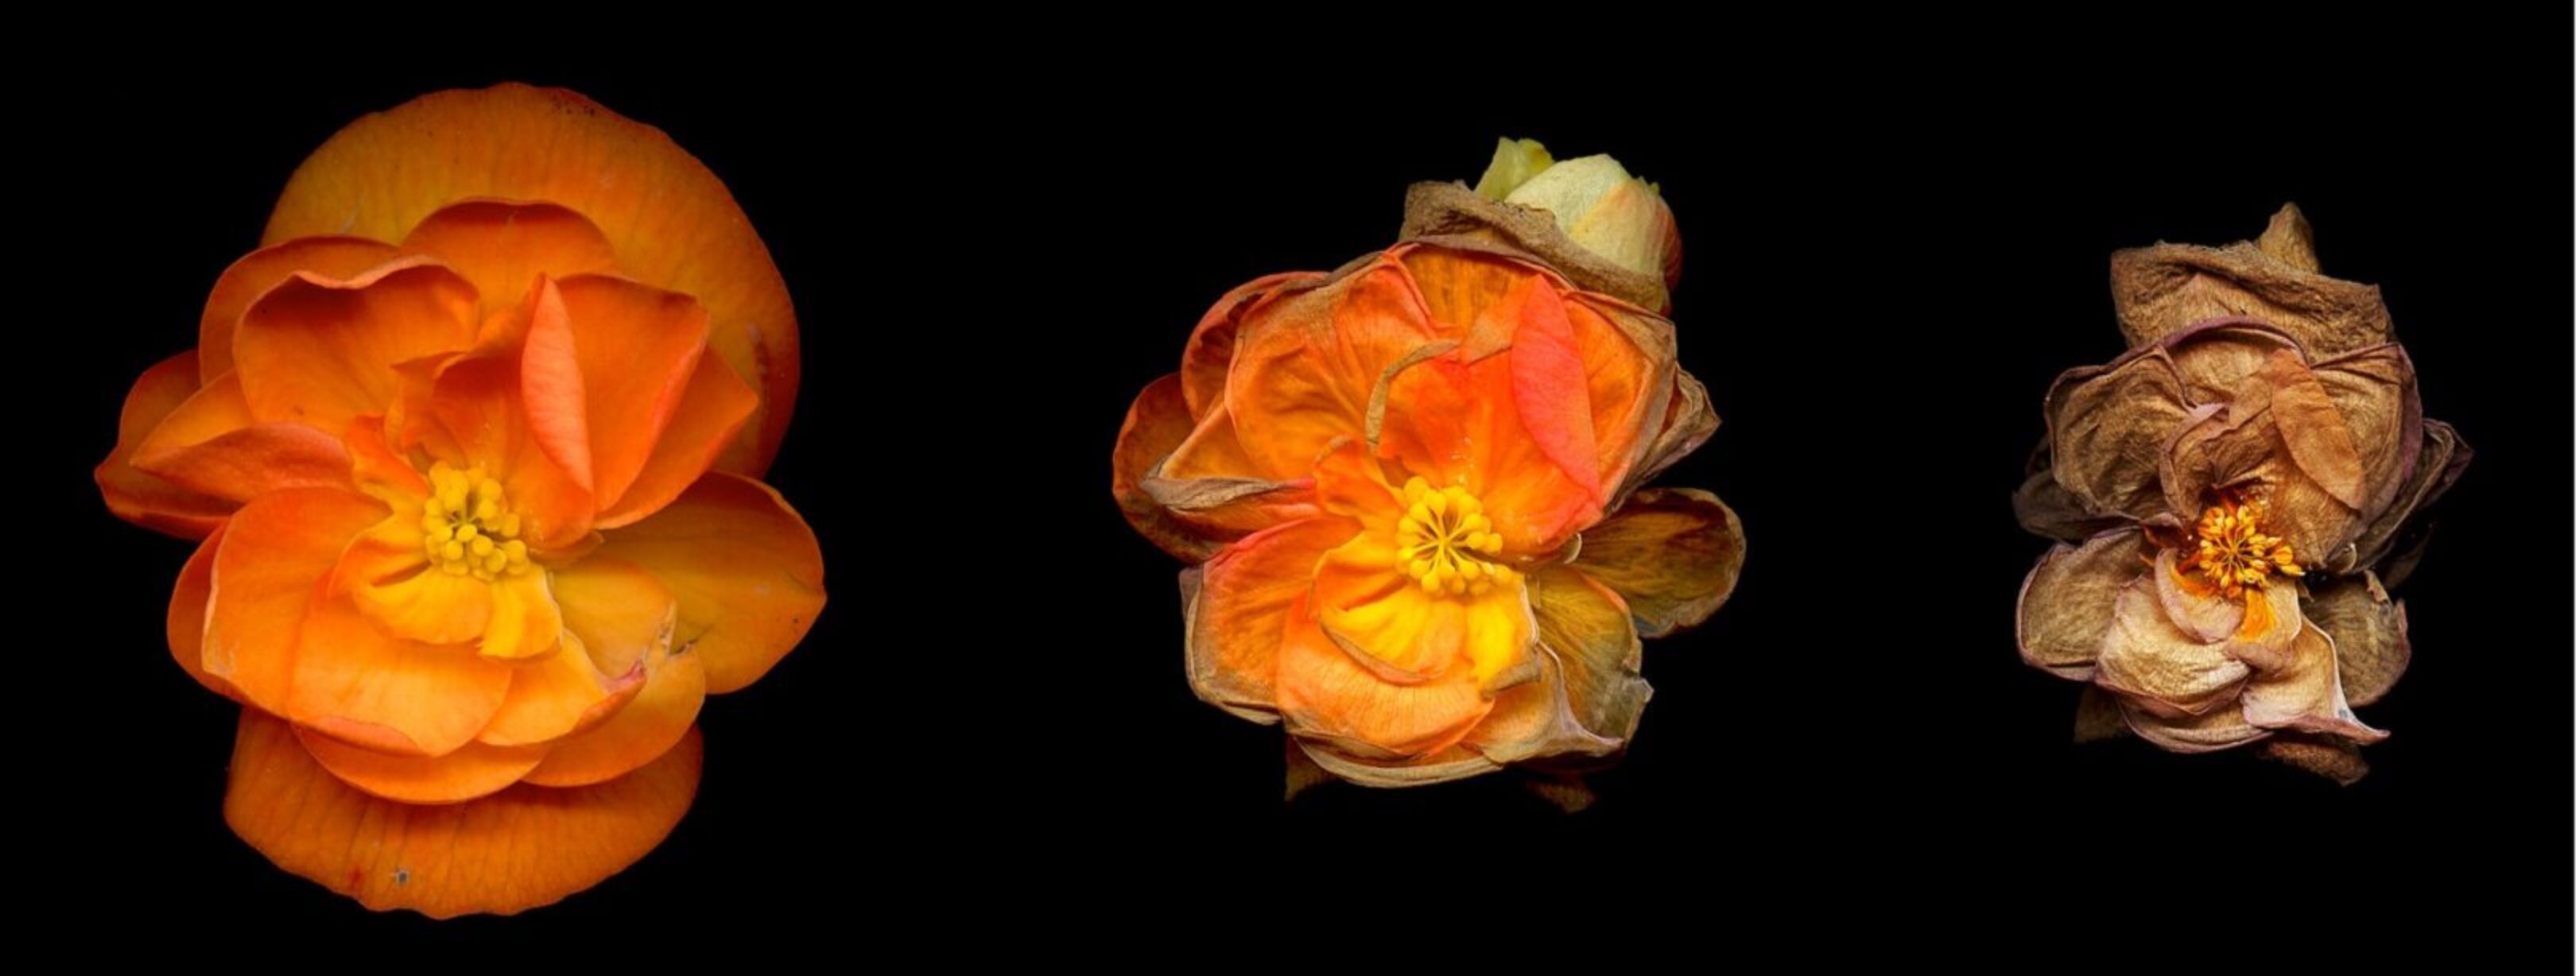 1620-Begonia flower by Joel Penner via Flickr